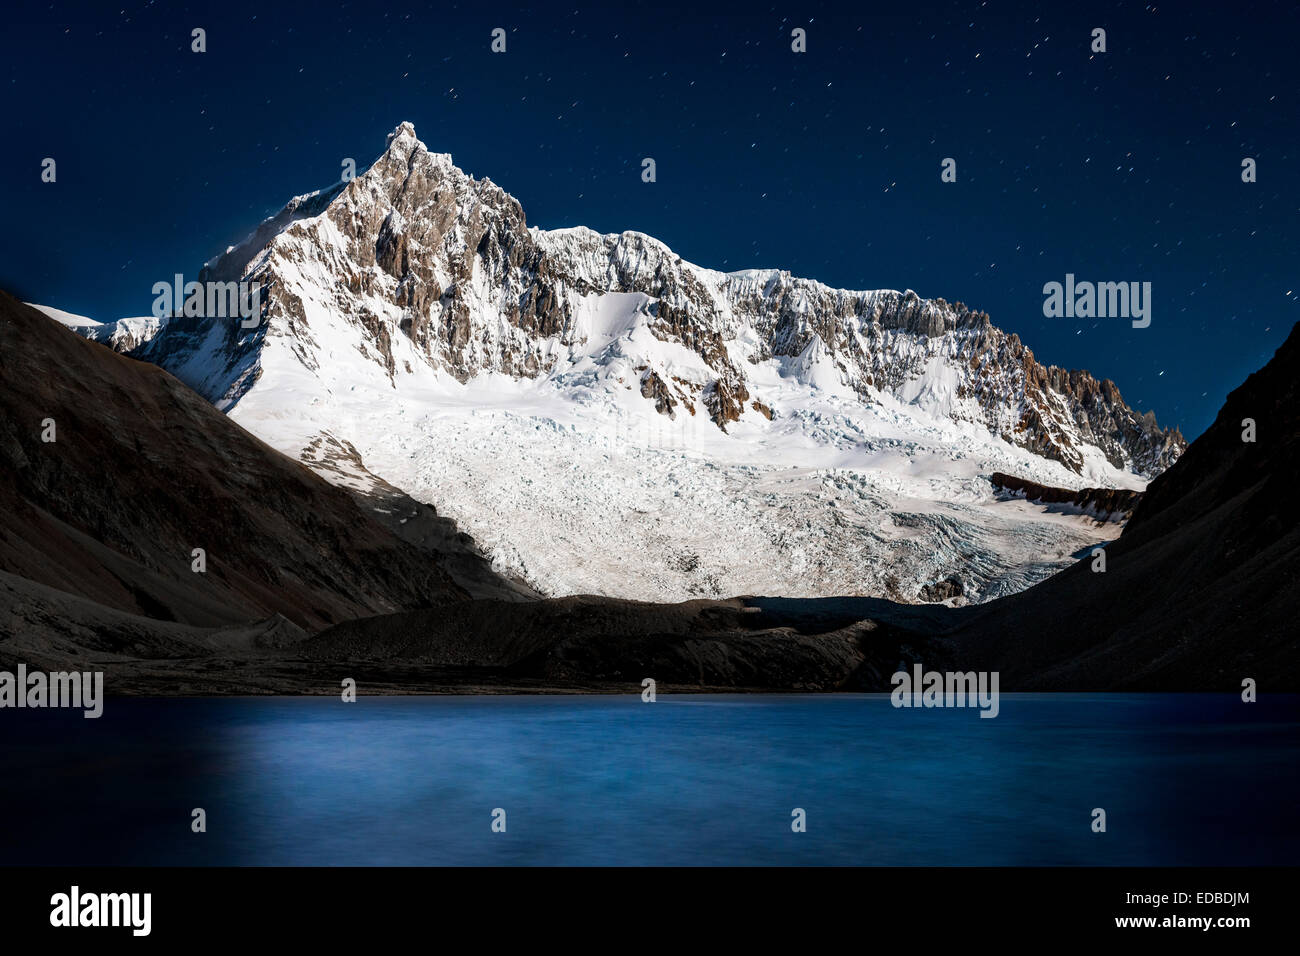 Mountain glaciers and a lake, at night, Perito Moreno National Park, Patagonia, Argentina Stock Photo